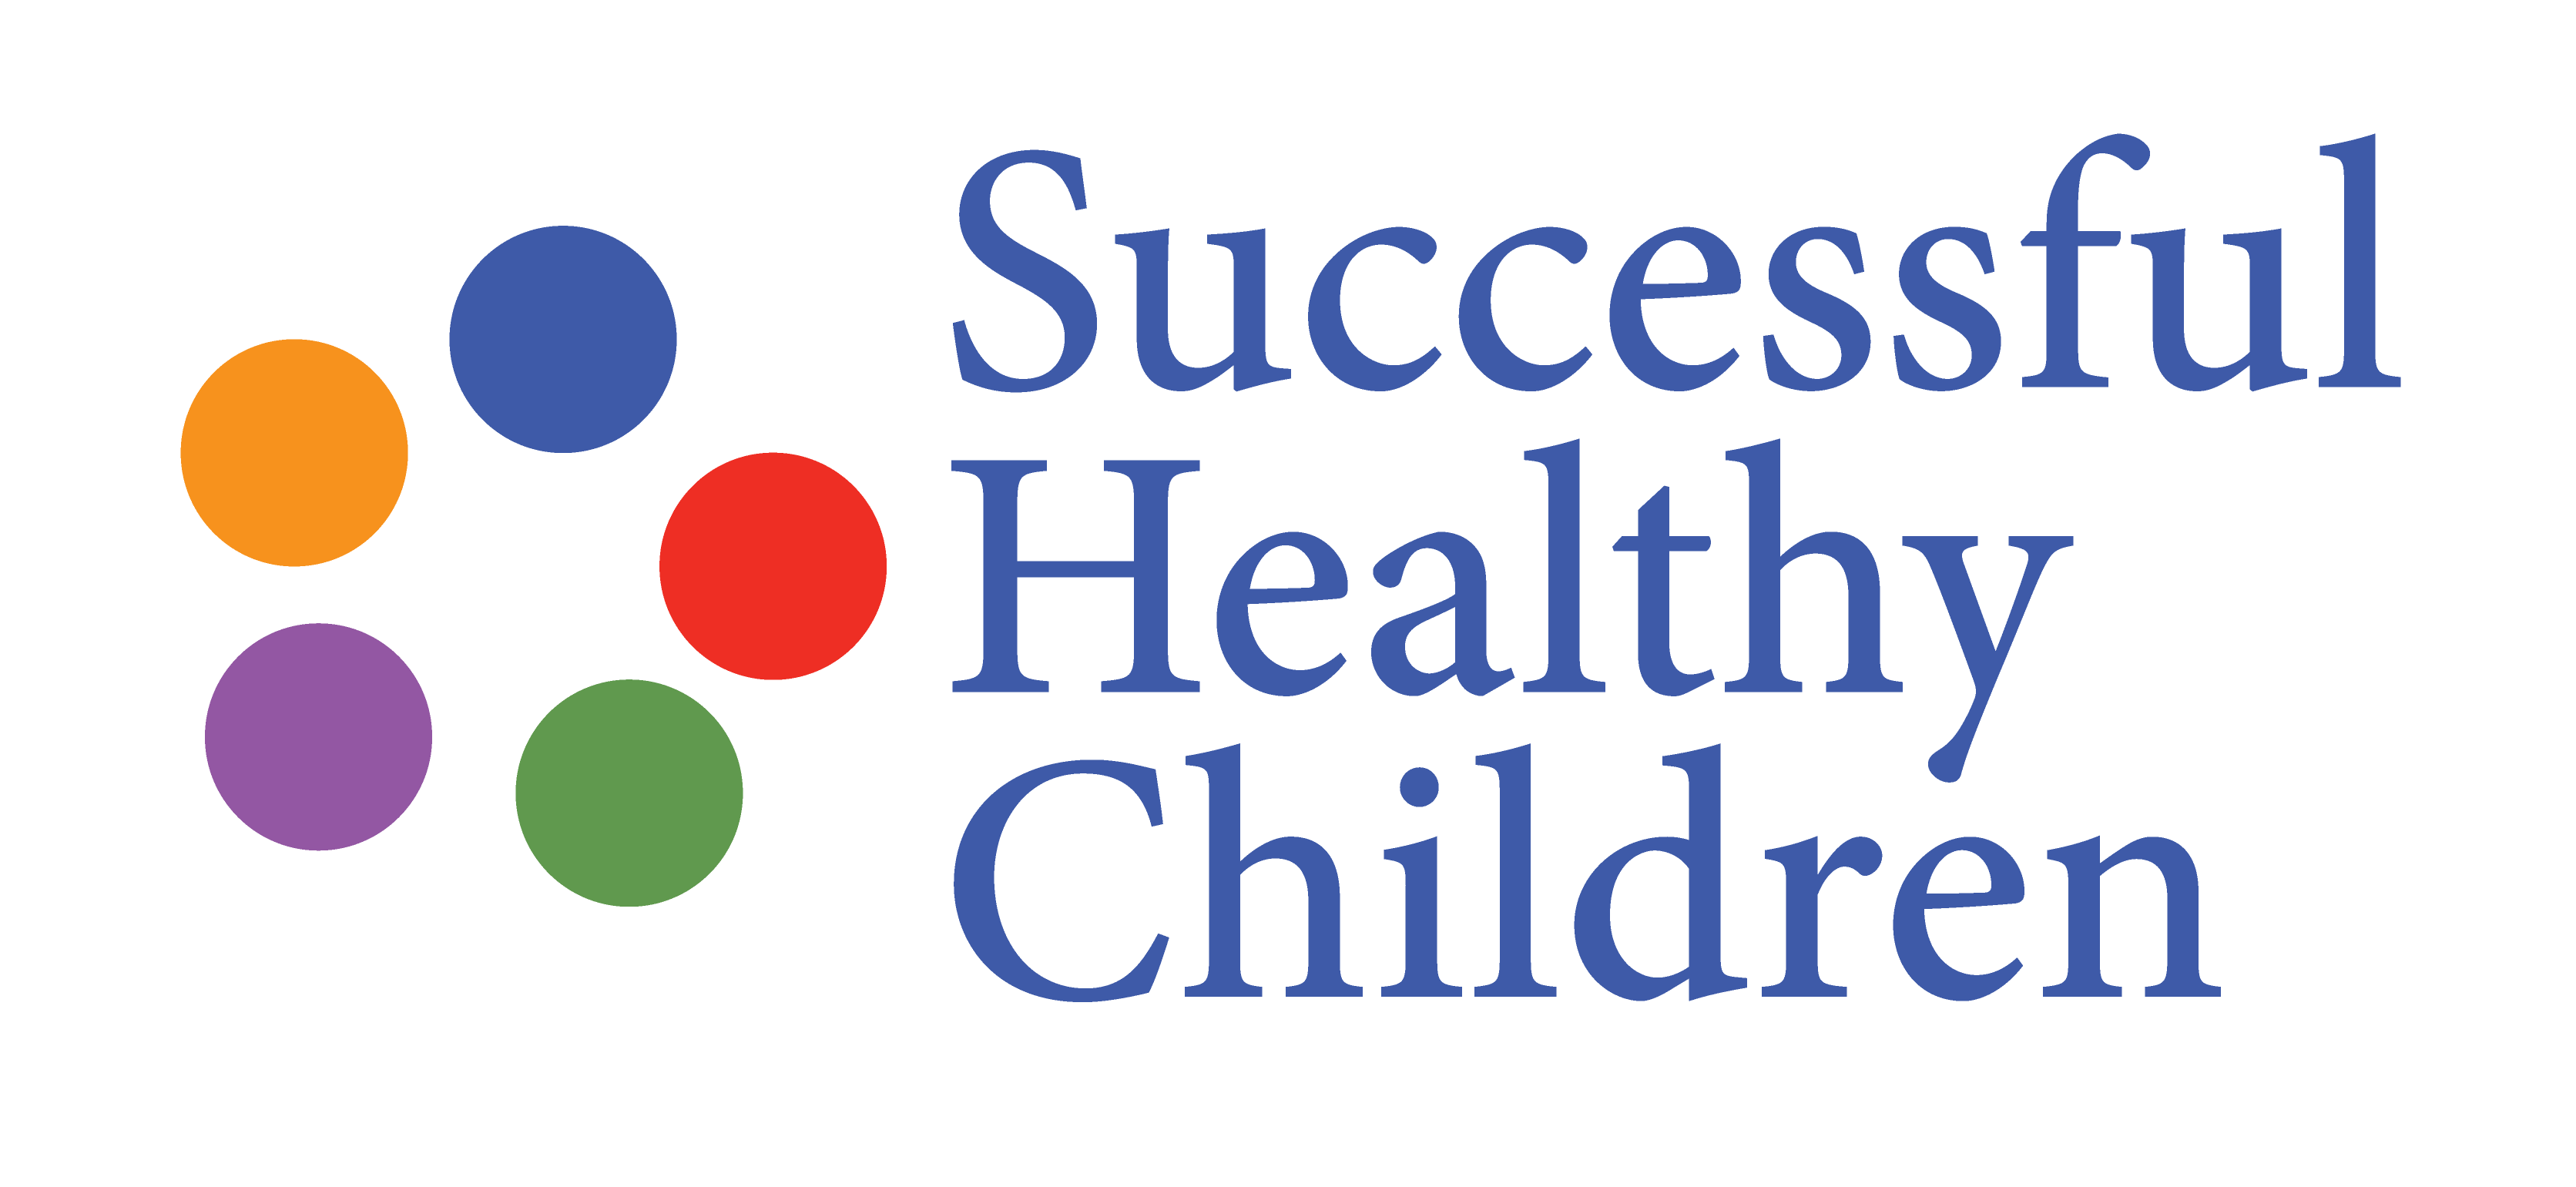 Successful Healthy Children